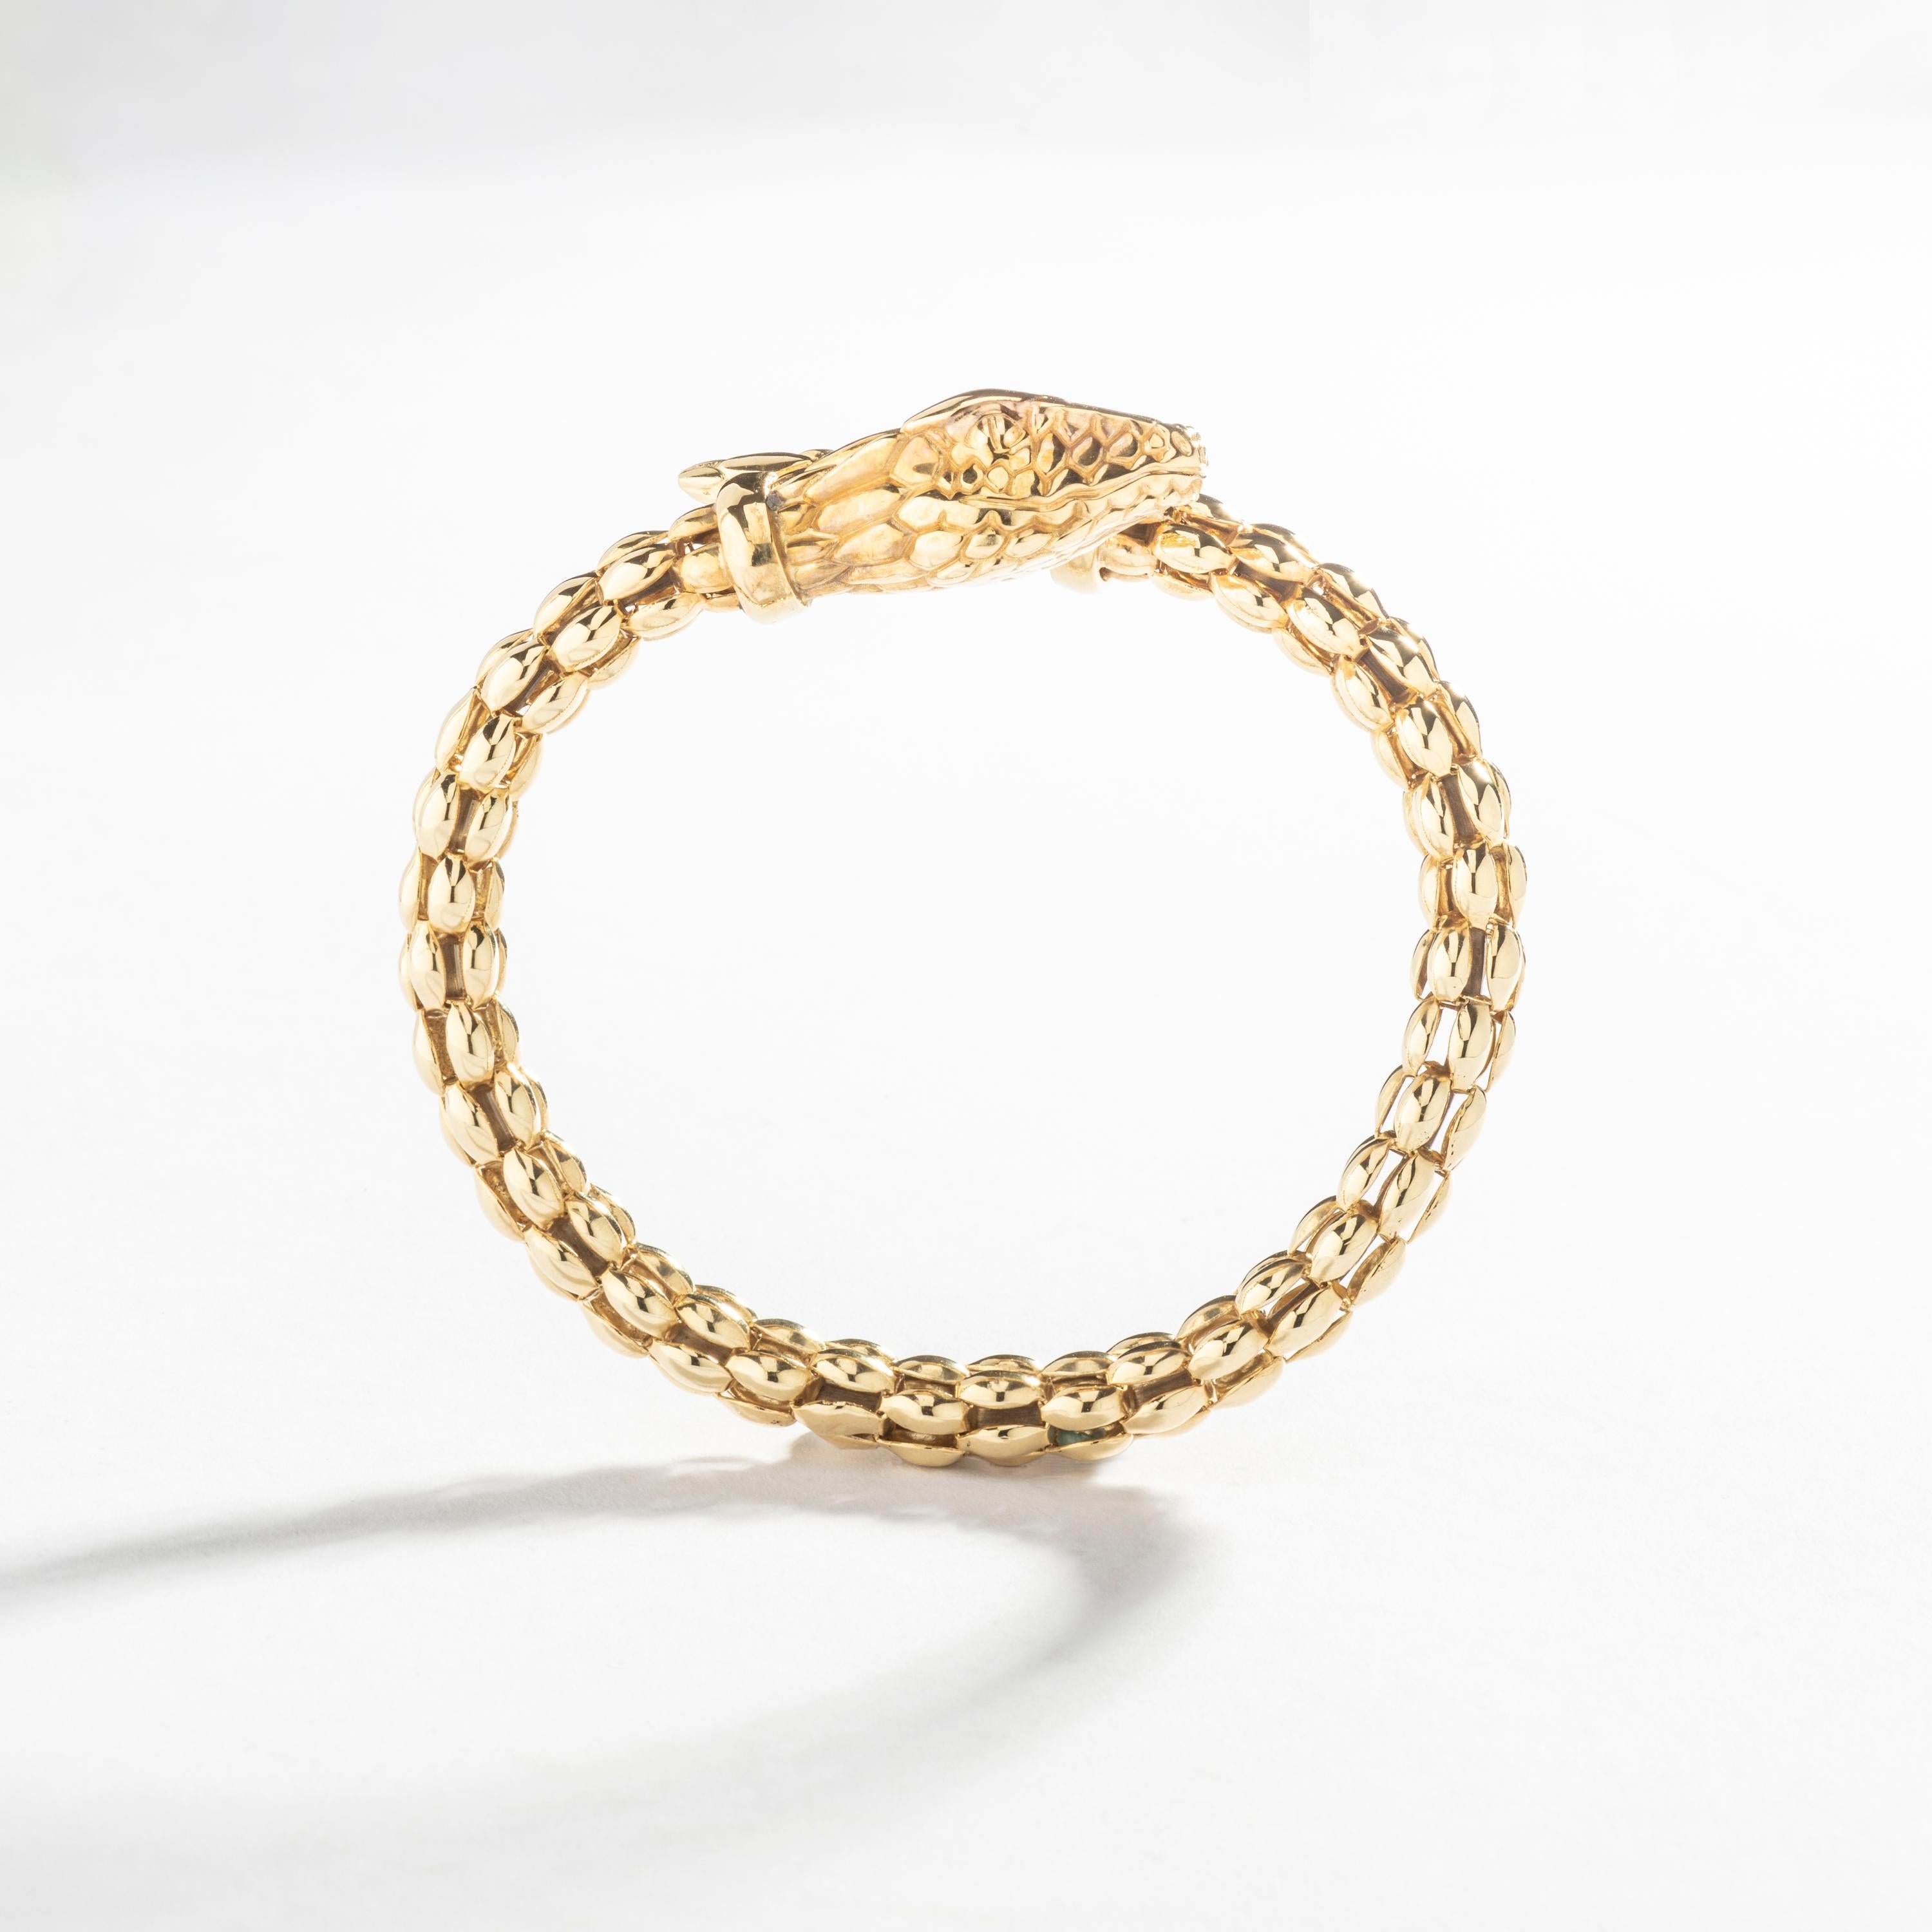 Le bracelet serpent en or jaune 18k est une pièce vraiment exquise fabriquée en Italie vers 1980.

Fabriqué en luxueux or jaune 18 carats, ce bracelet présente un motif de serpent unique et complexe, à la fois élégant et intemporel. Sa taille